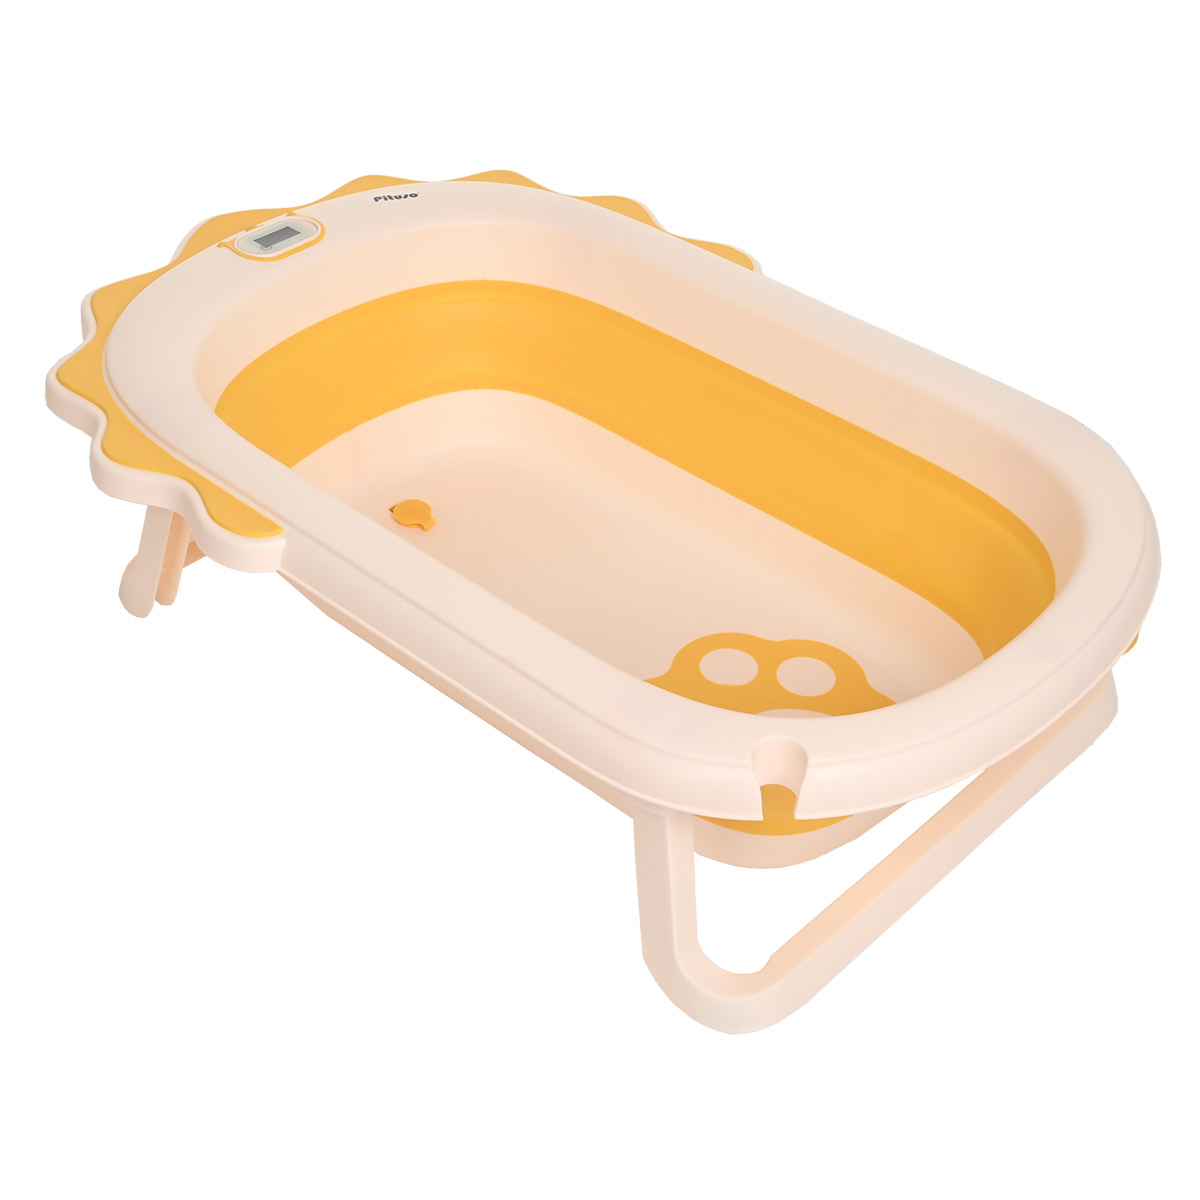 Детская ванна Pituso складная, желтый, 80 см pituso детская ванна складная со встроенным термометром 81 5 см